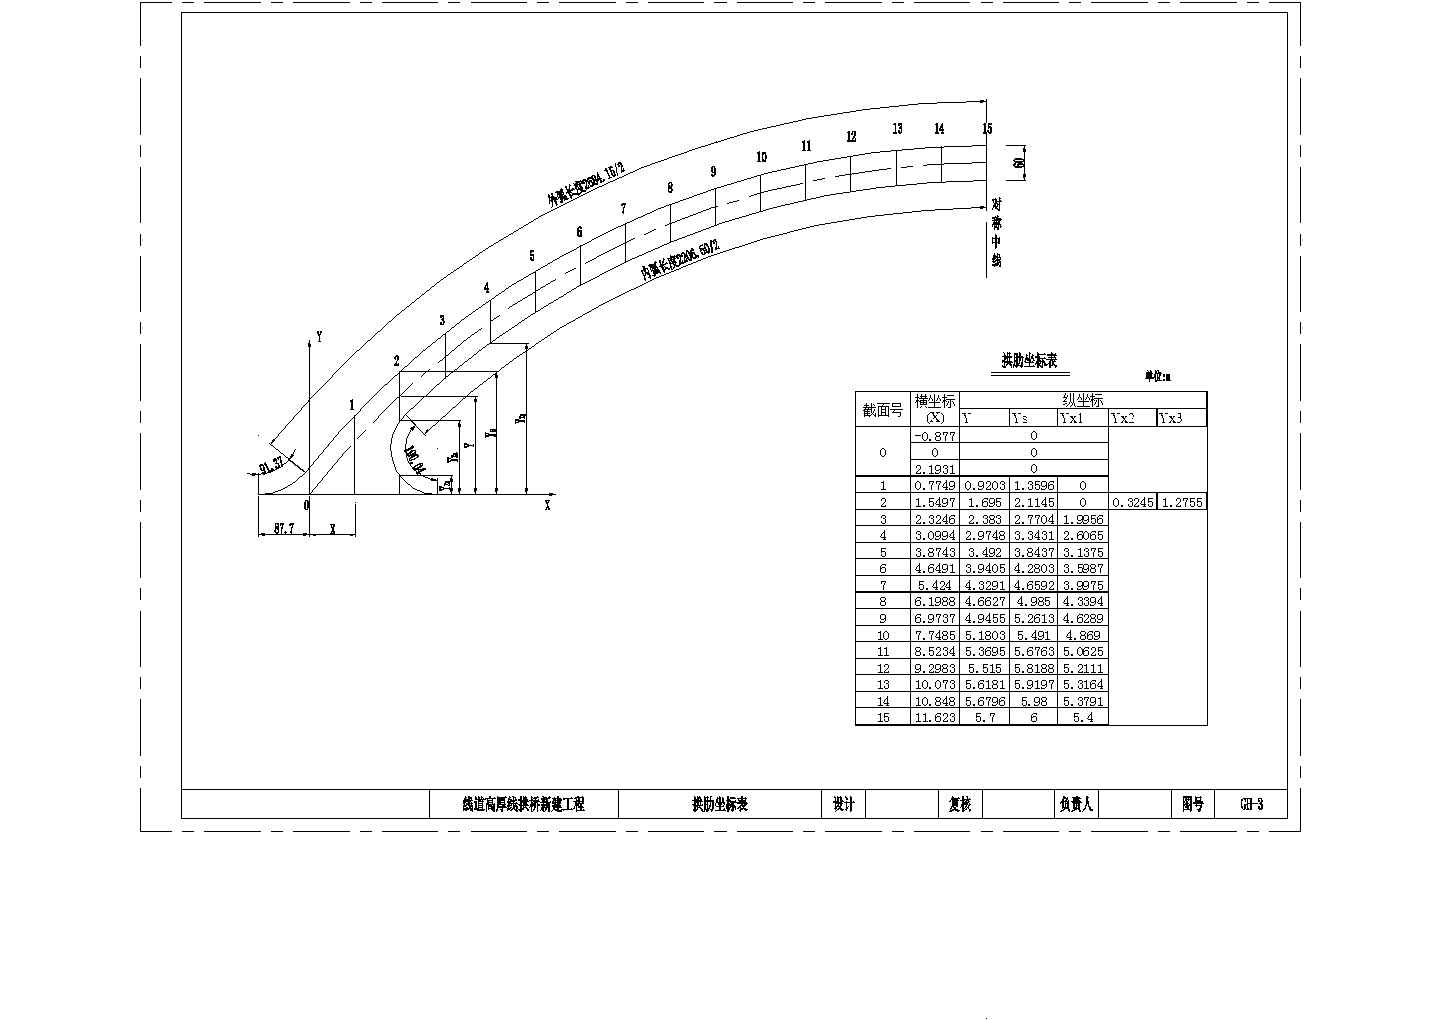 某景区一跨25m下承式系杆拱桥CAD节点剖面设计图